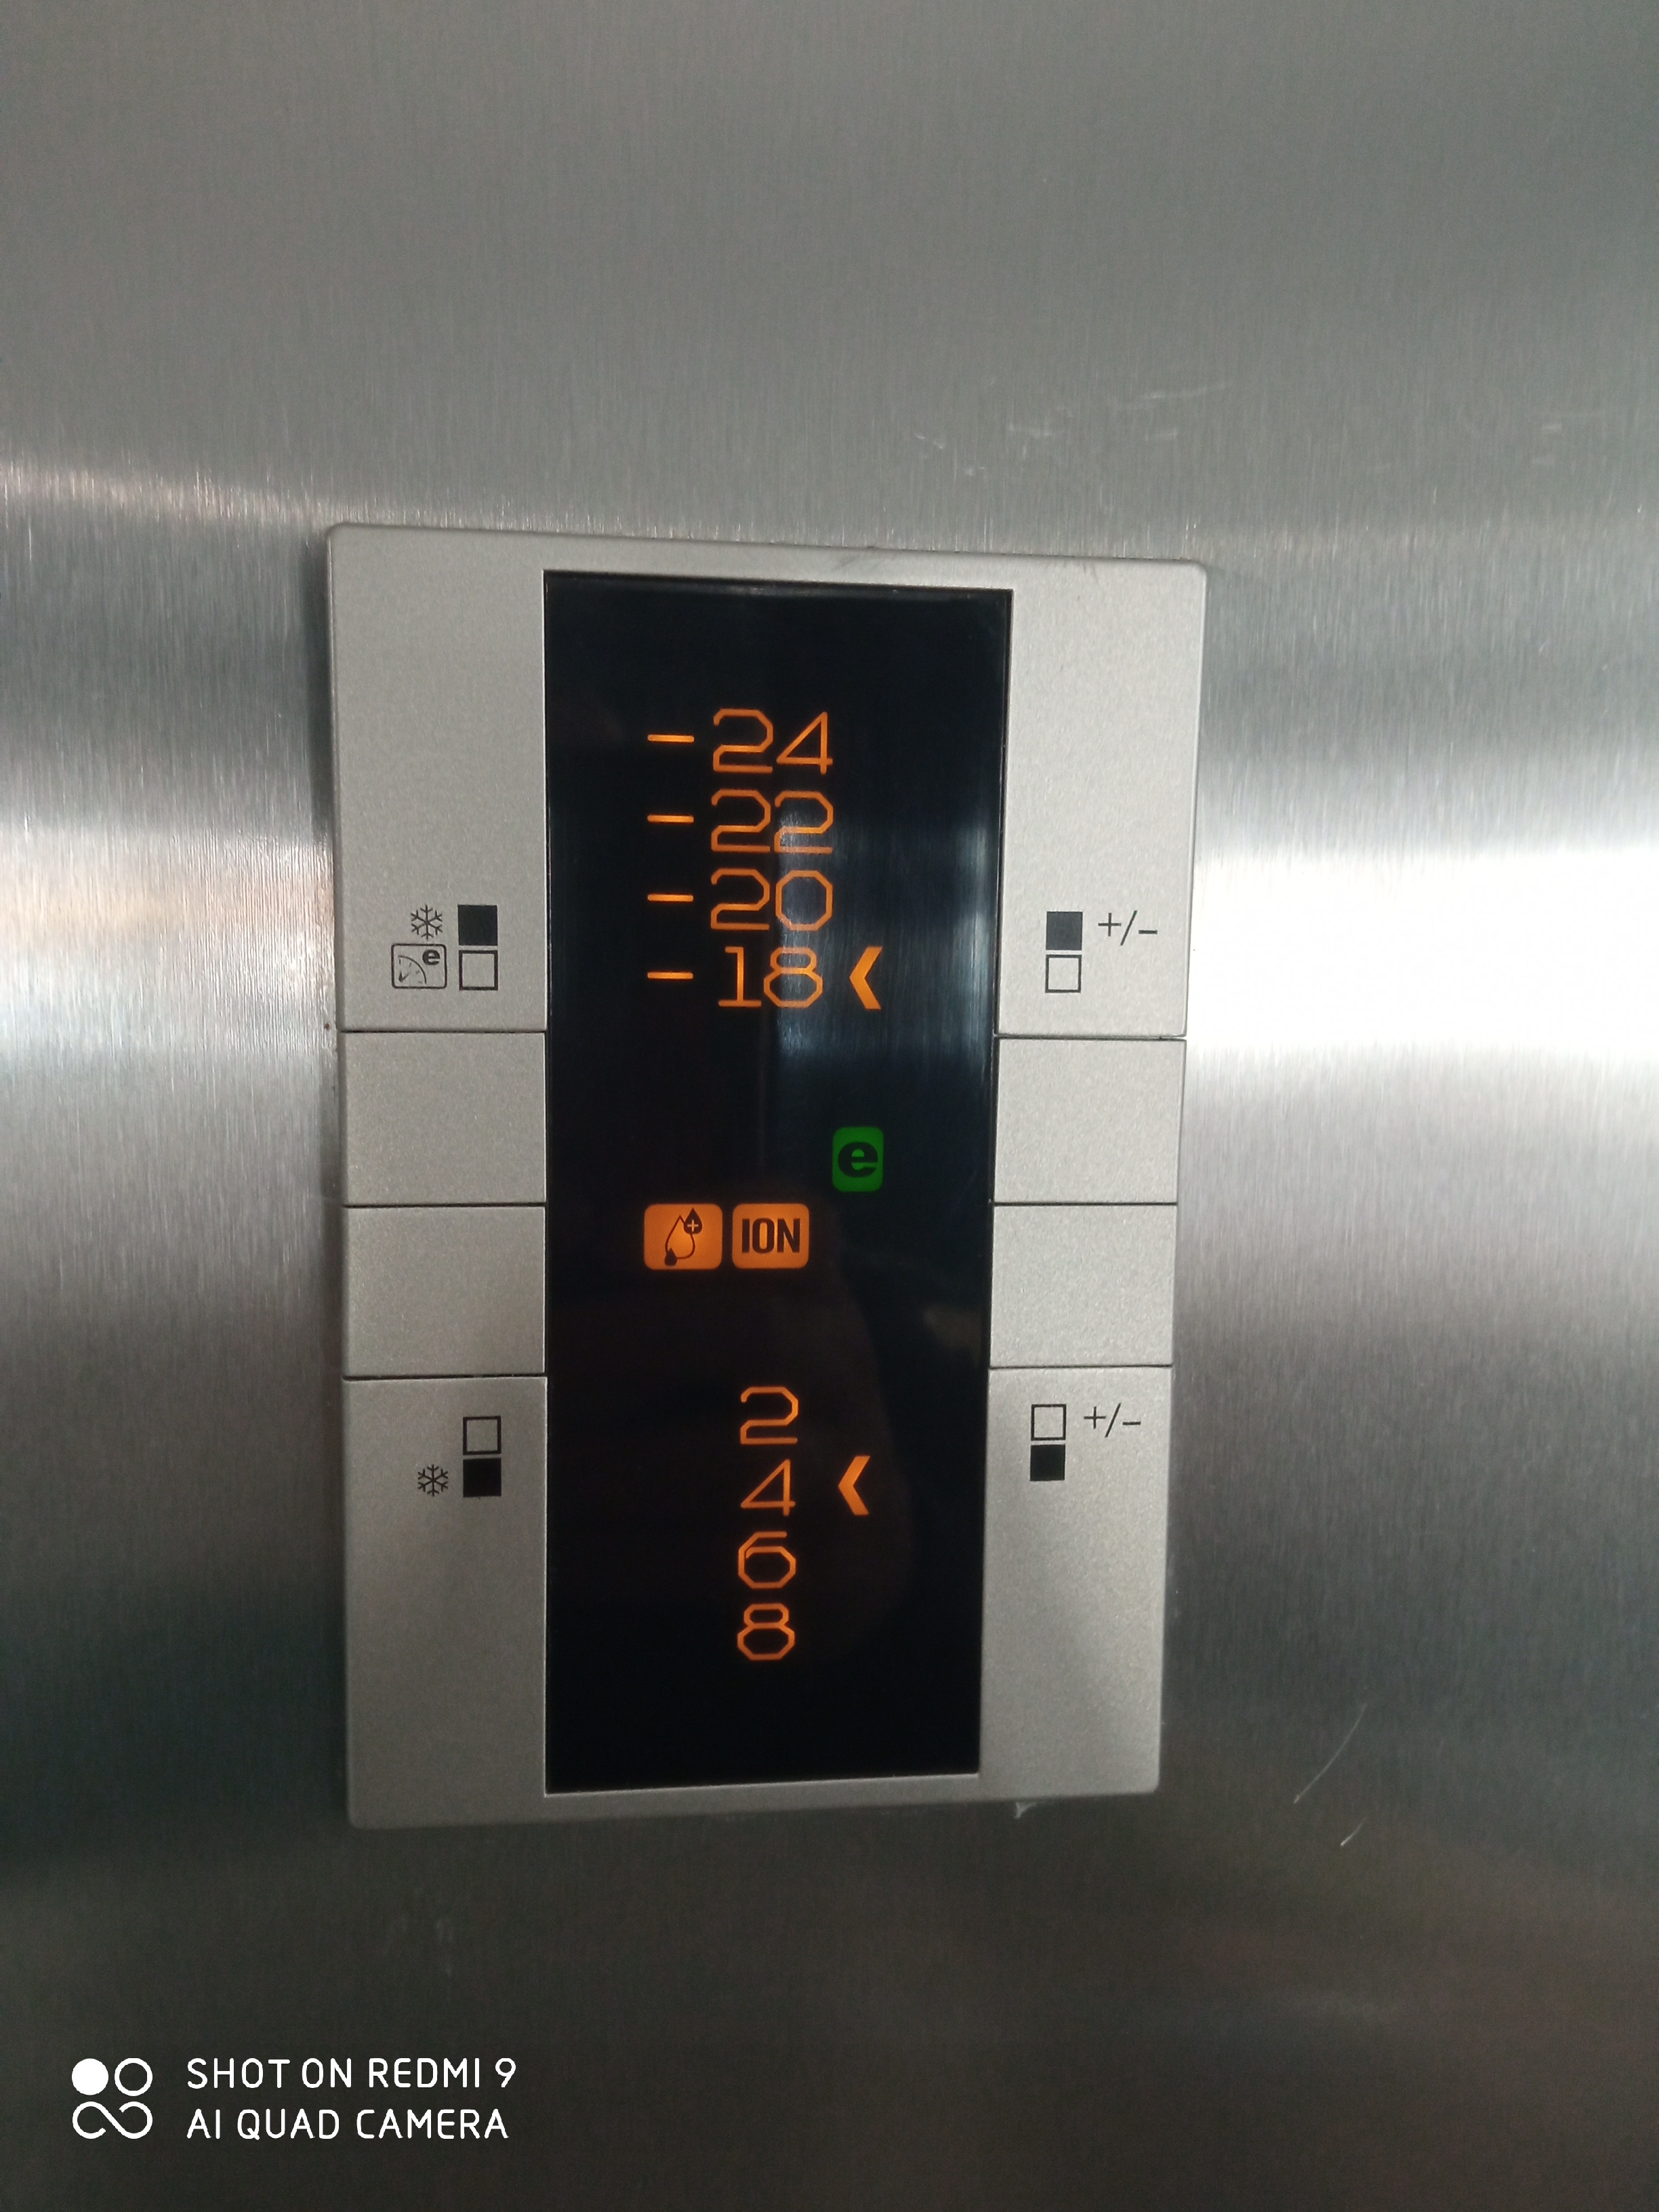 How do I adjust the fridge temperature?